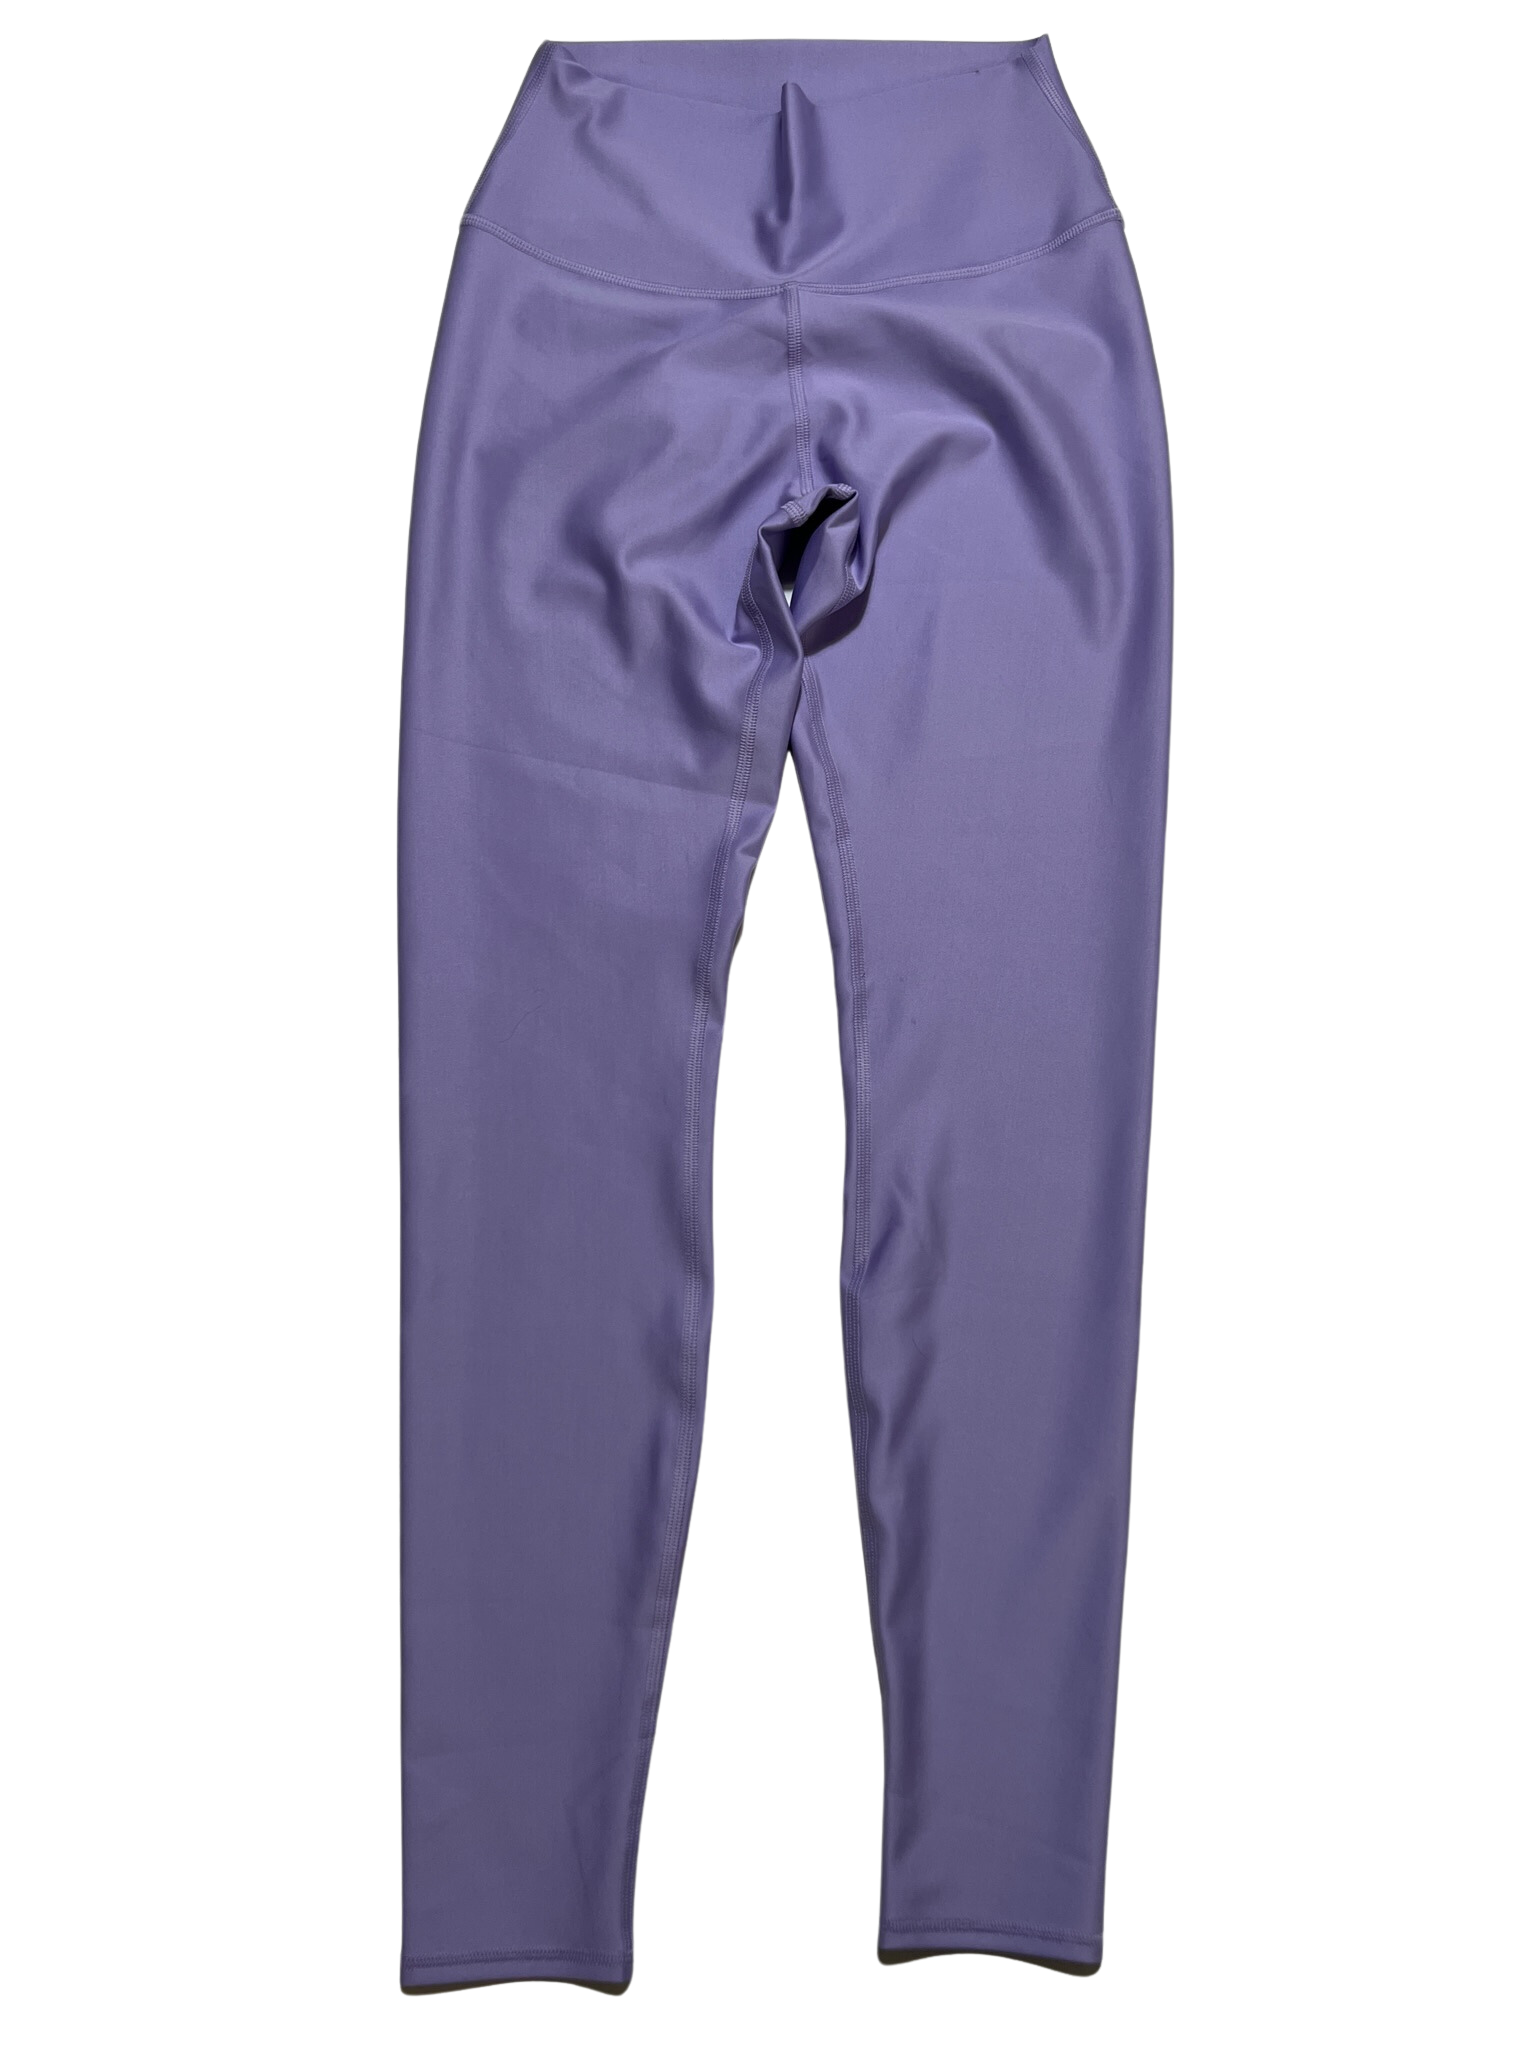 Leggings Alo Purple size S International in Cotton - 26919197